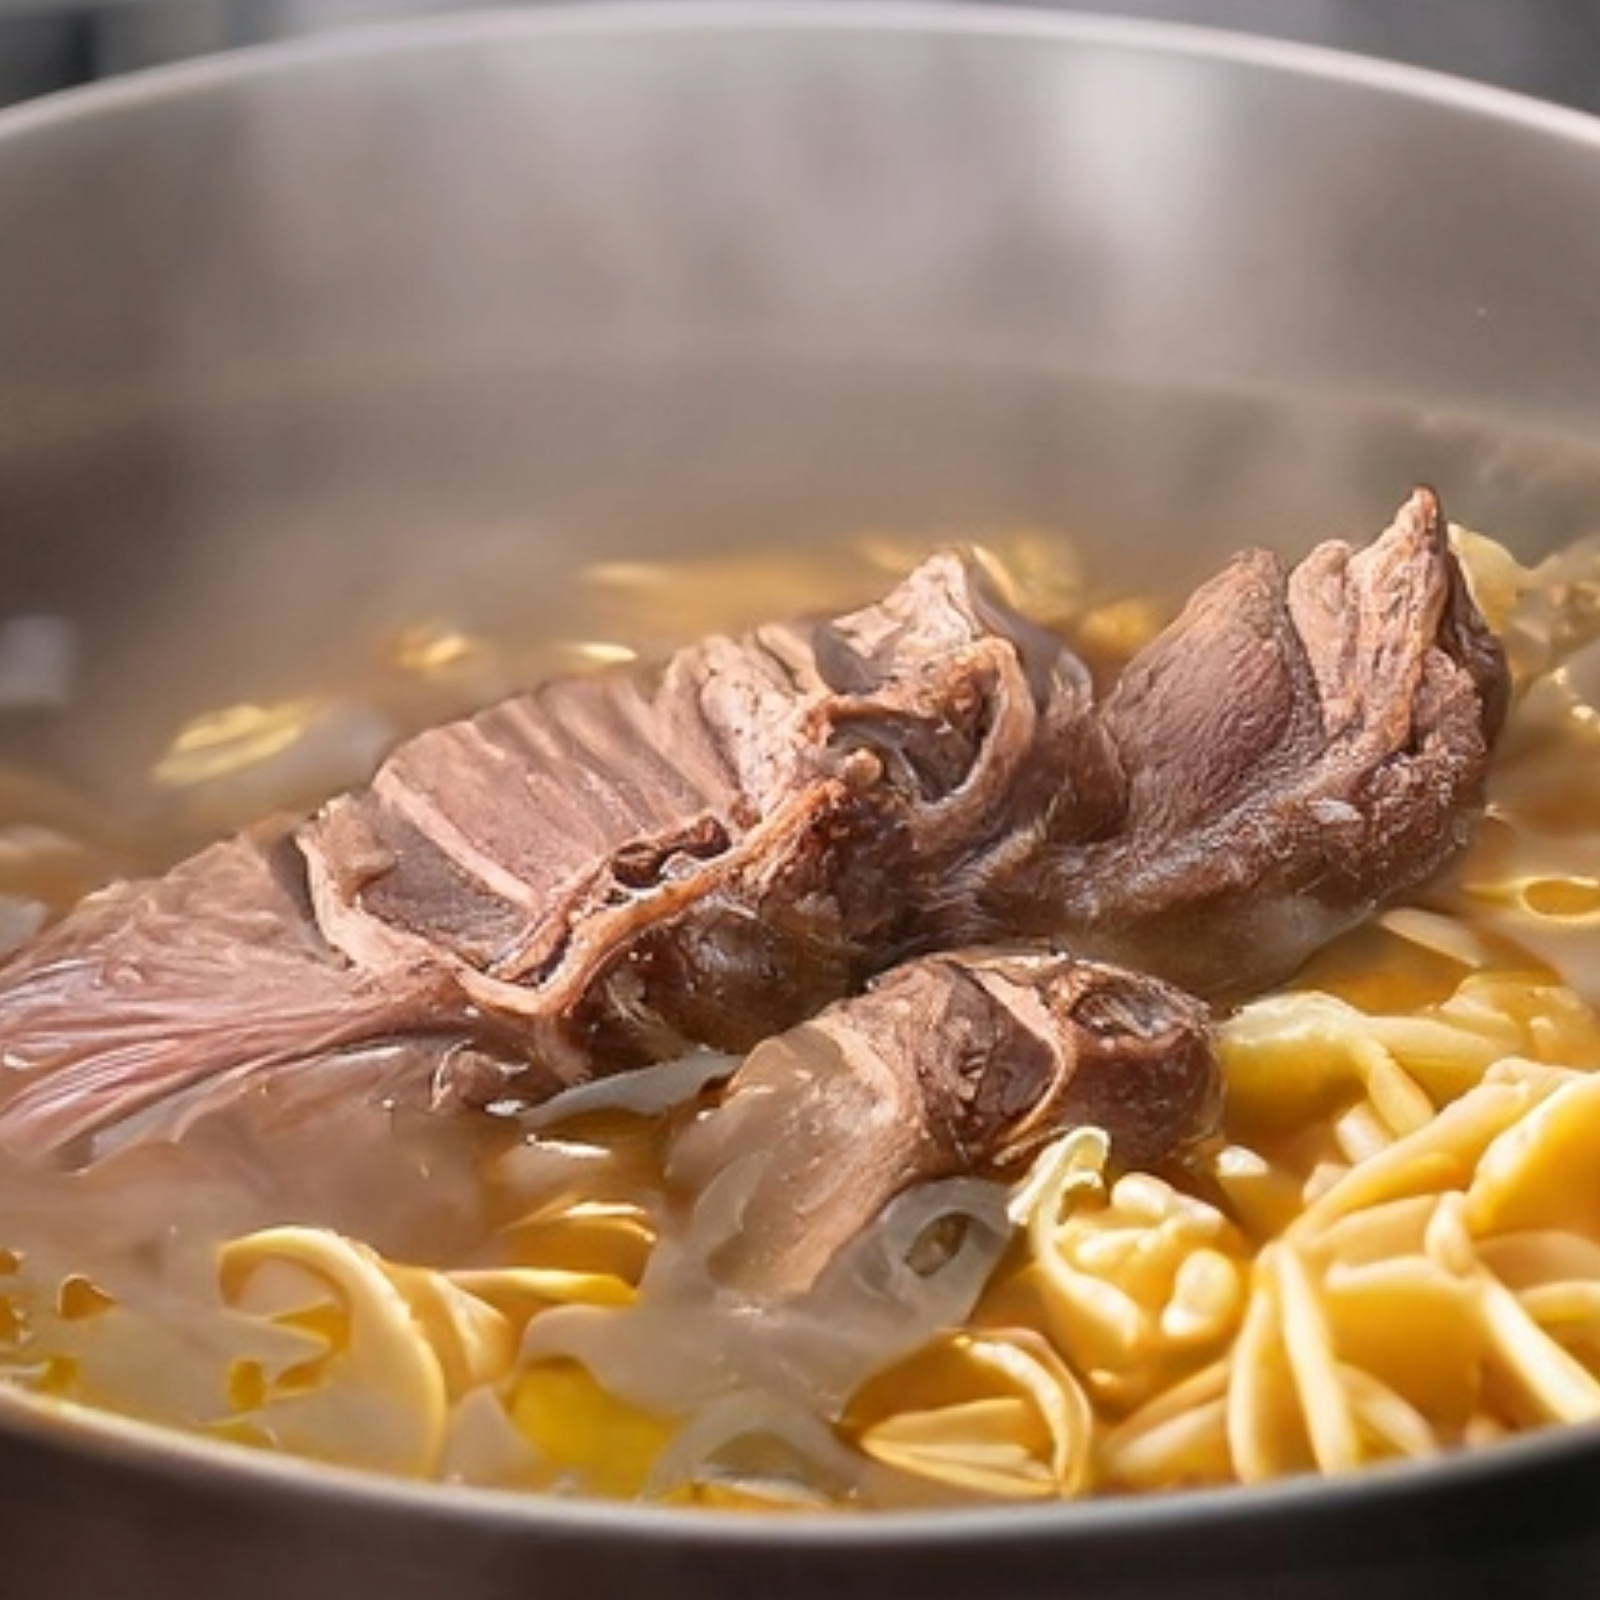 thai beef noodle soup